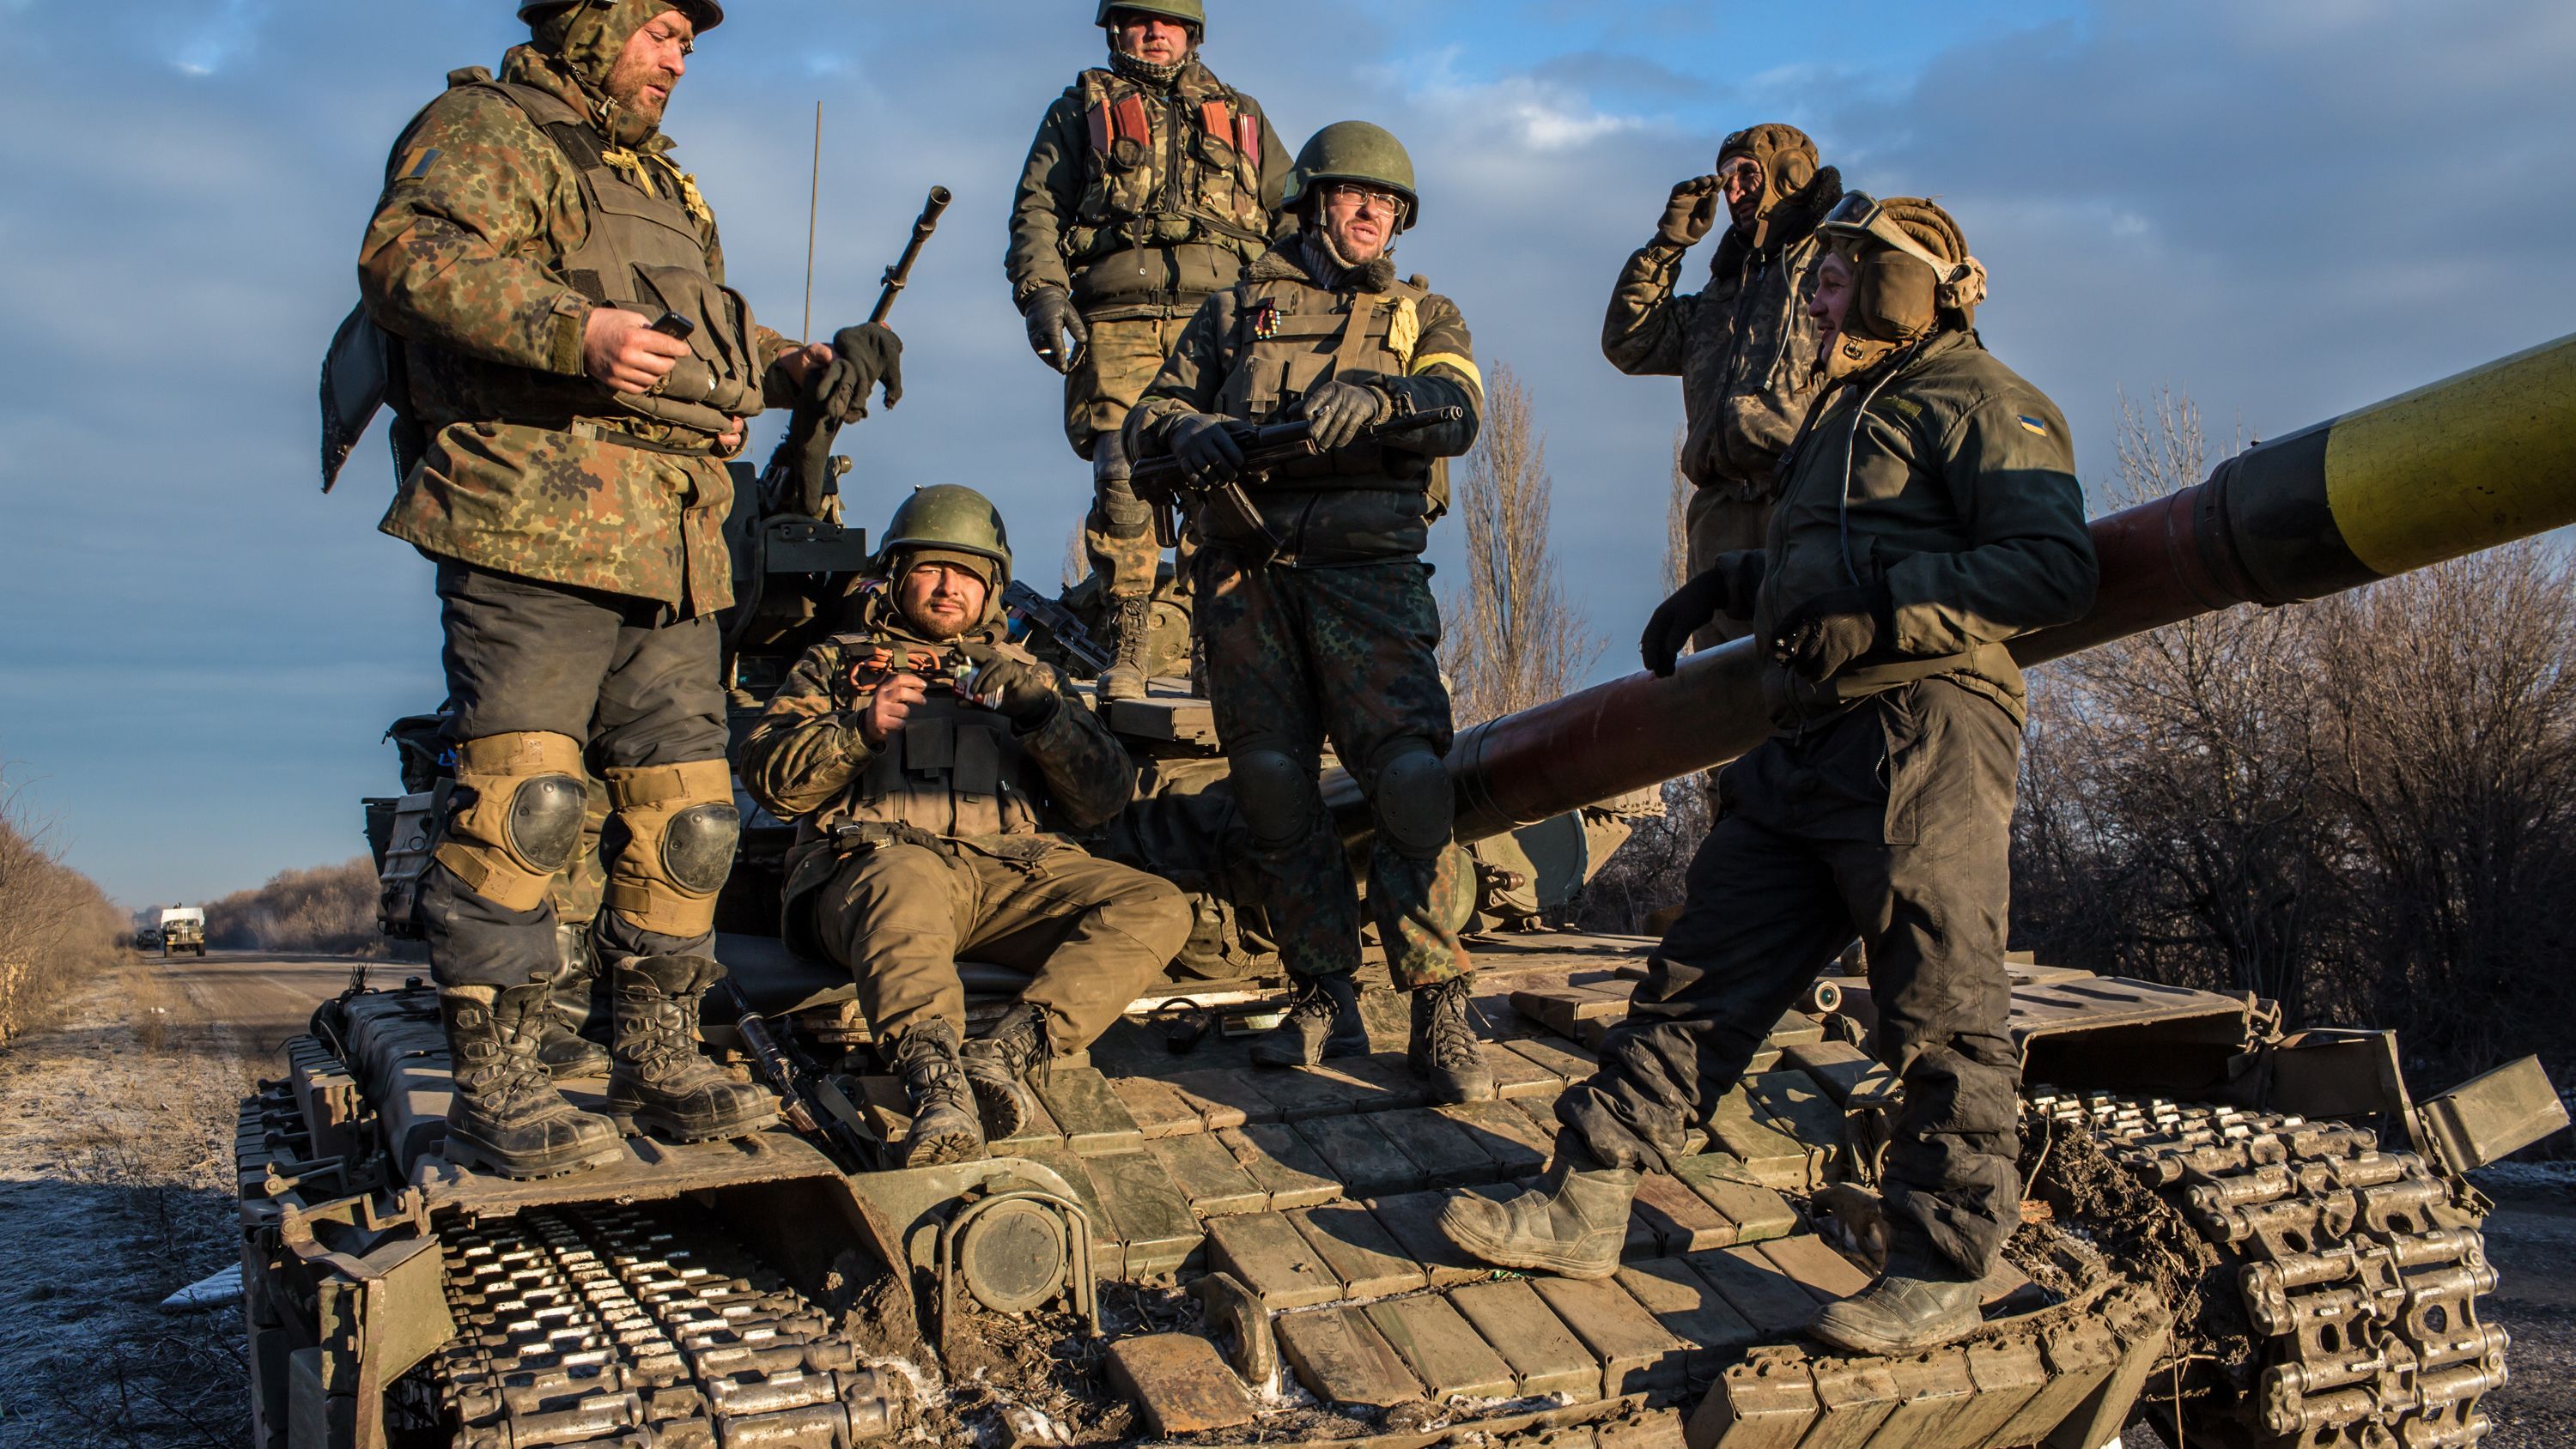 ВСУ готовятся к наступлению на Донбассе, но не пойдут против народа